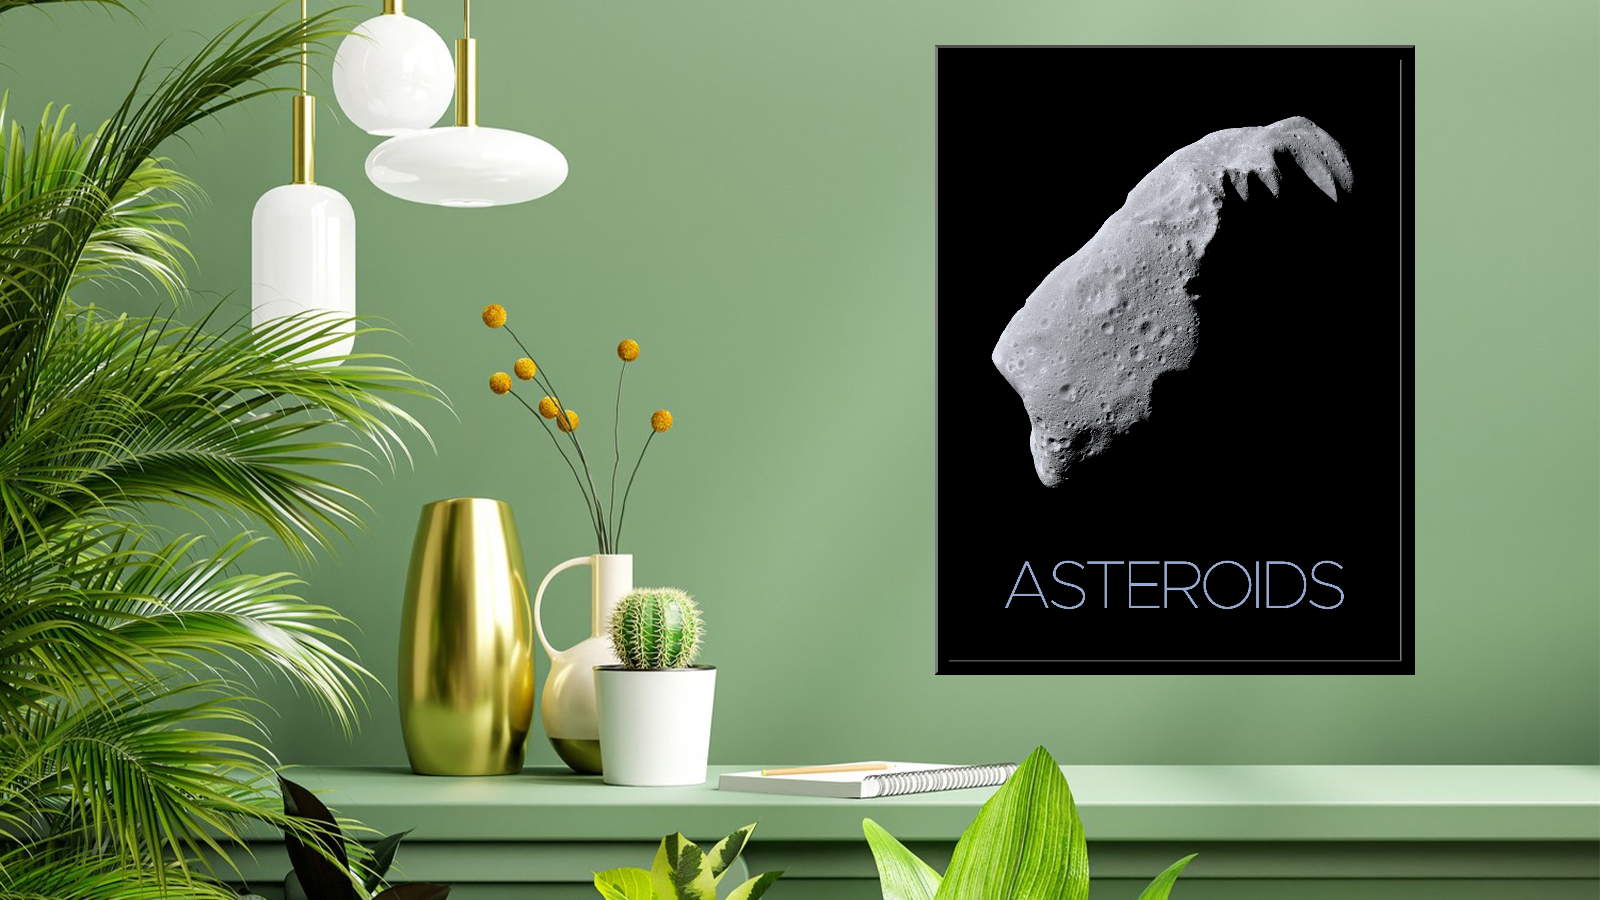  Asteroid 243 Ida 